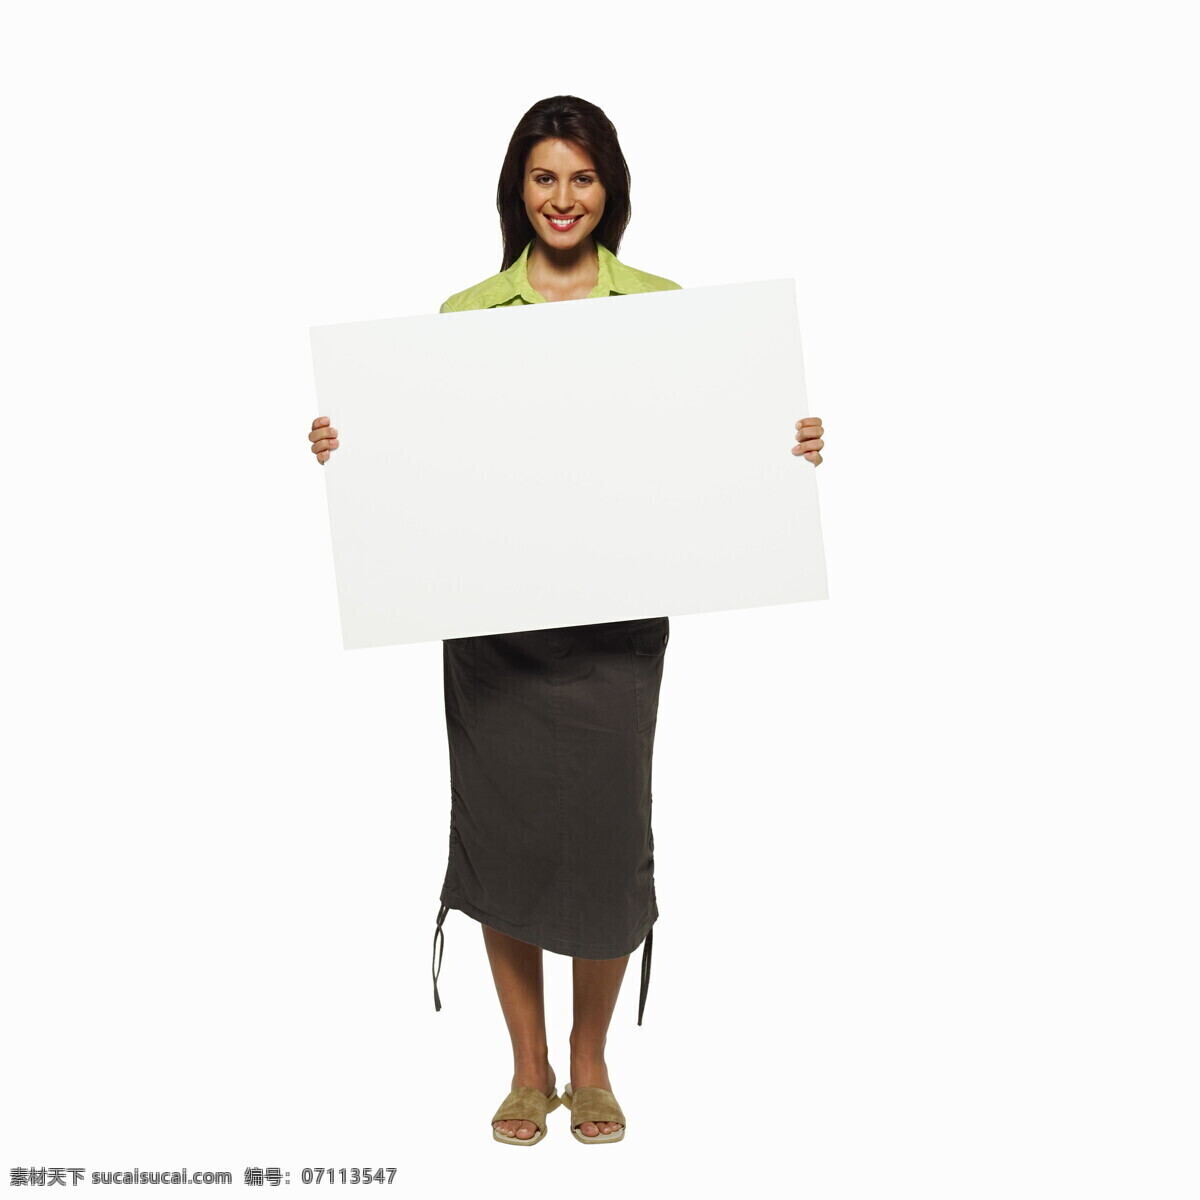 成年 女性人物 广告牌 人物广告牌 人物 手拿 白色牌 空白 空白广告牌 高清图片 女性 女人 生活人物 人物图片